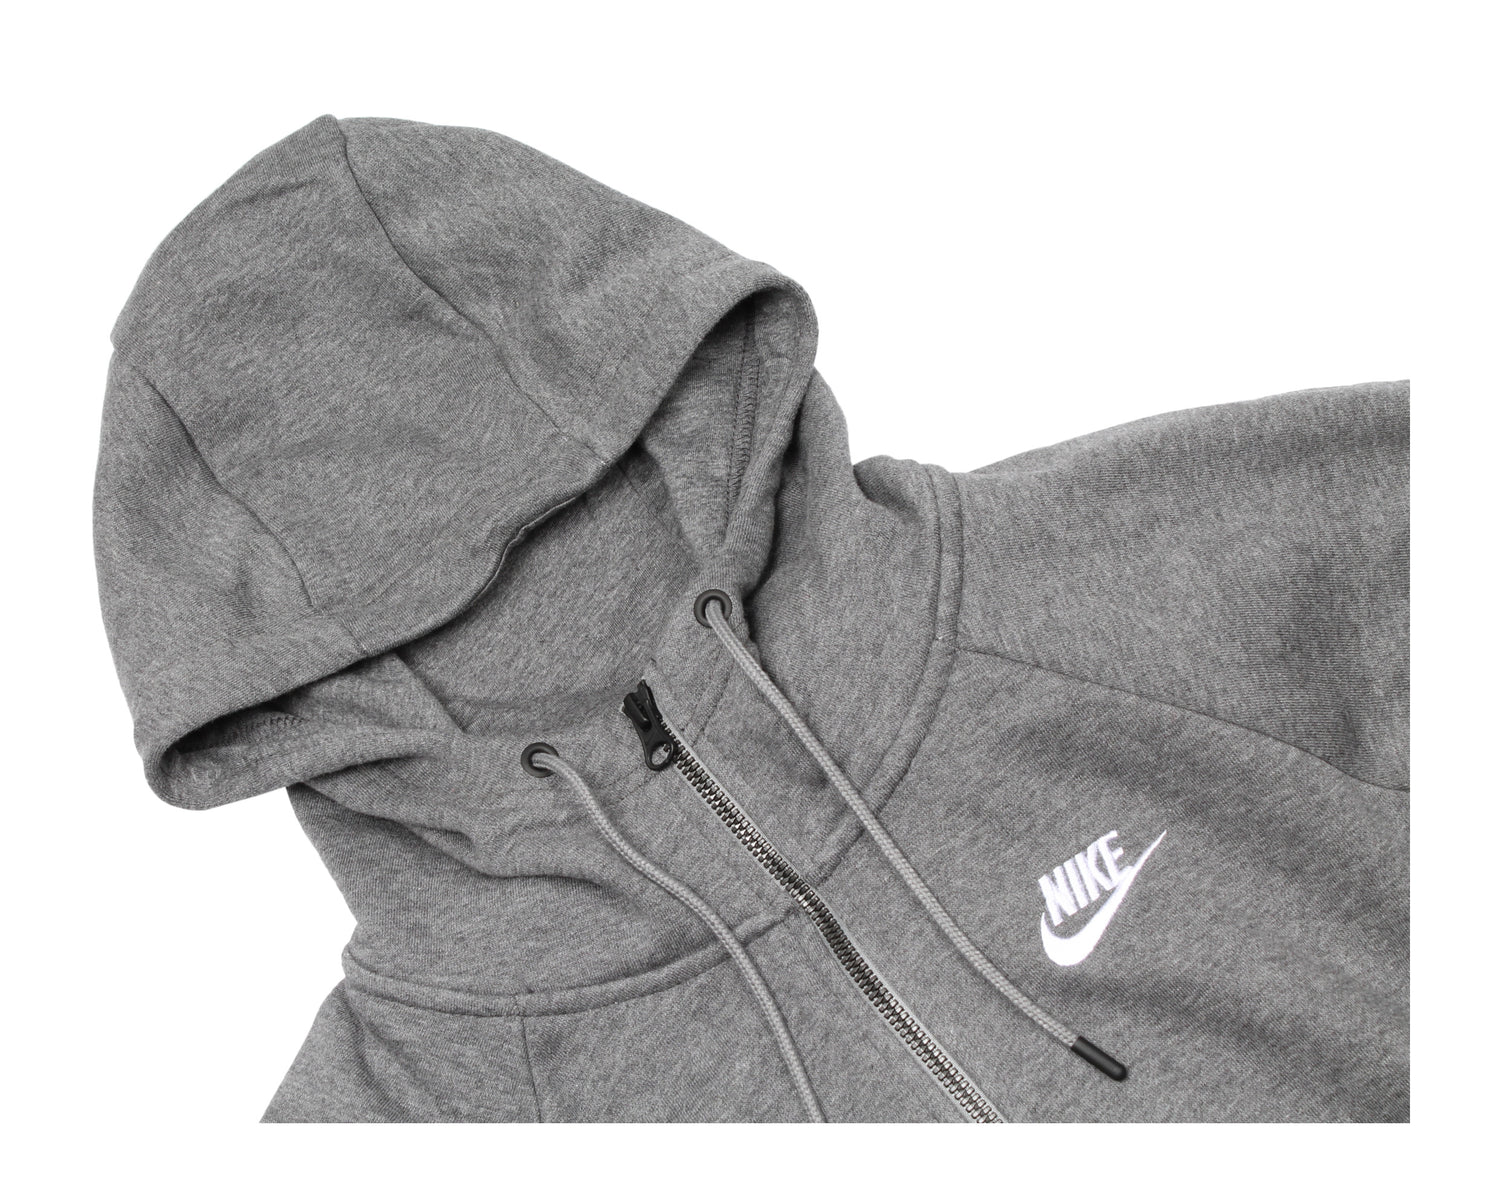 Nike Sportswear Essential Full-Zip Fleece Women's Hoodie